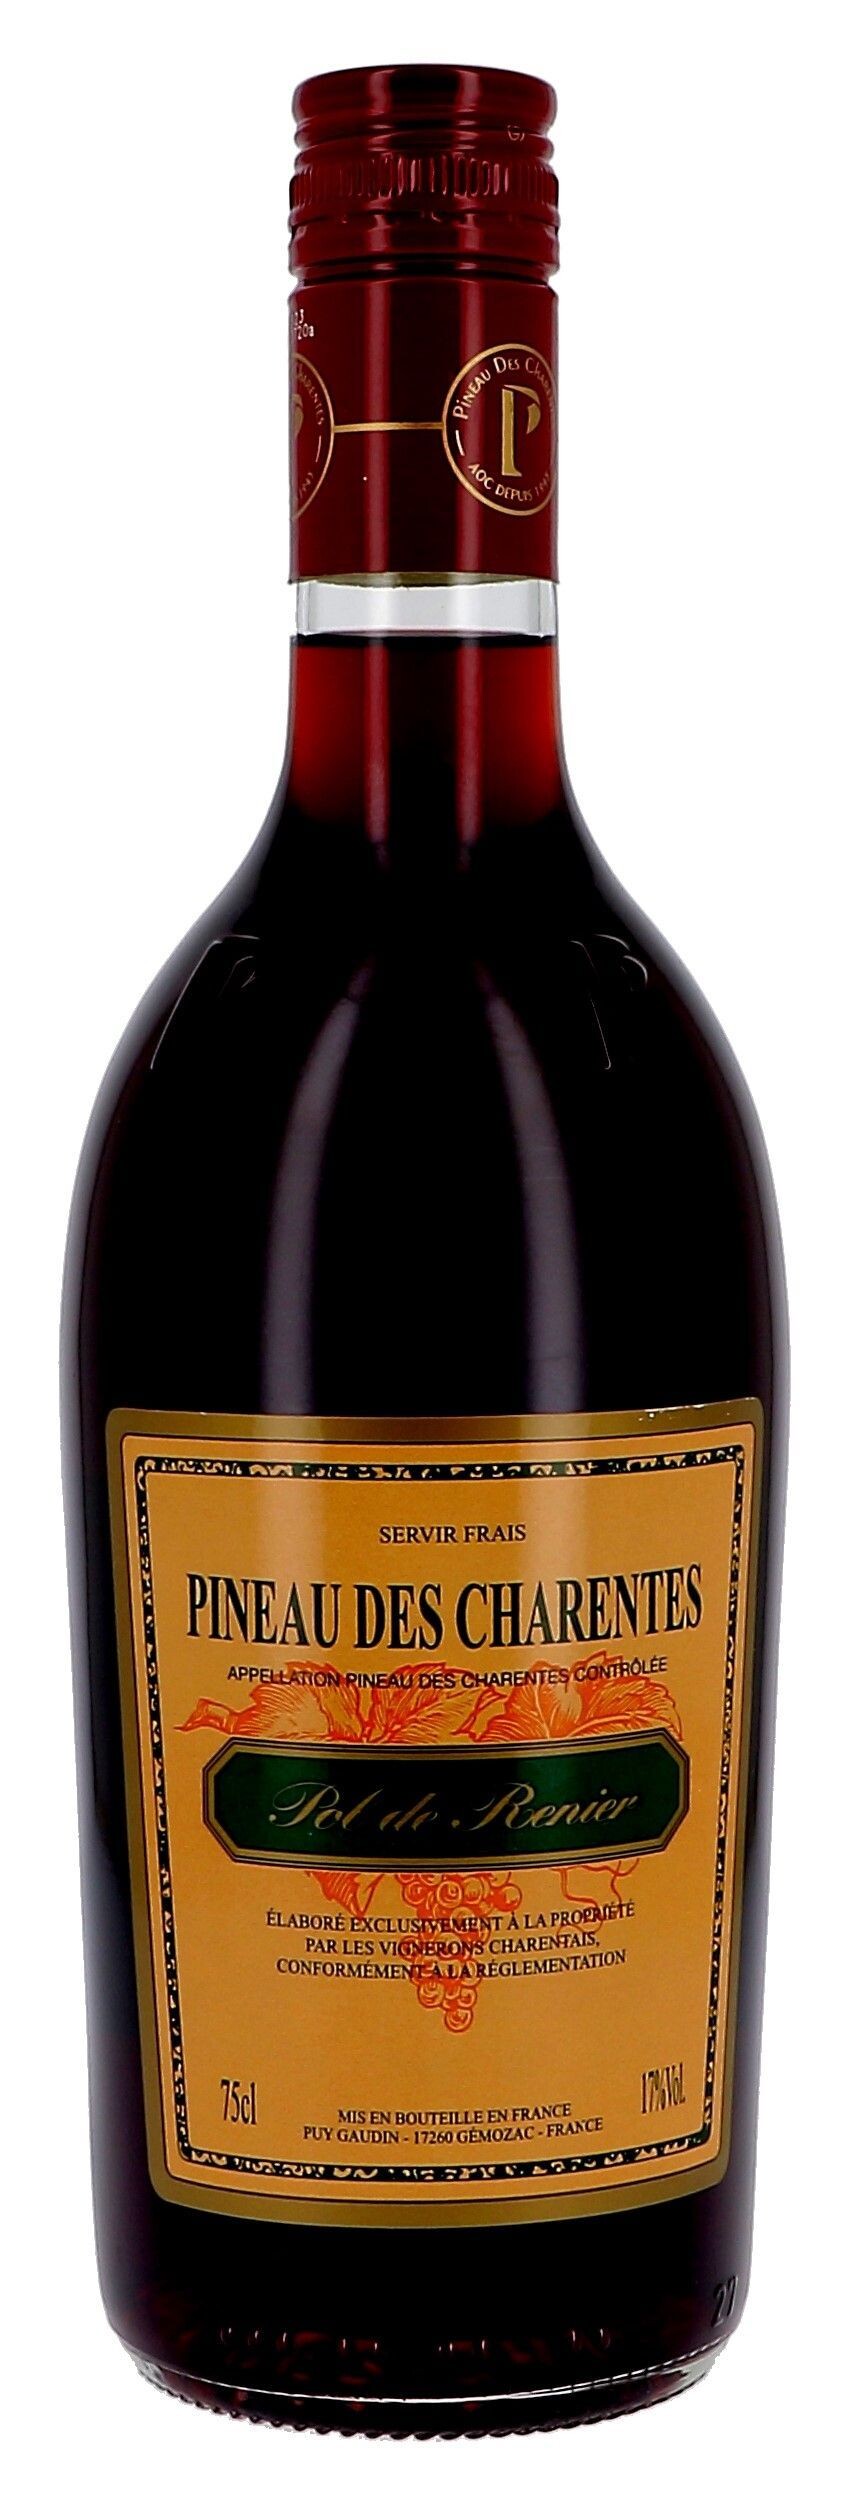 Pineau des Charentes Pol de Renier red 75cl 17% (Pineau de charentes)